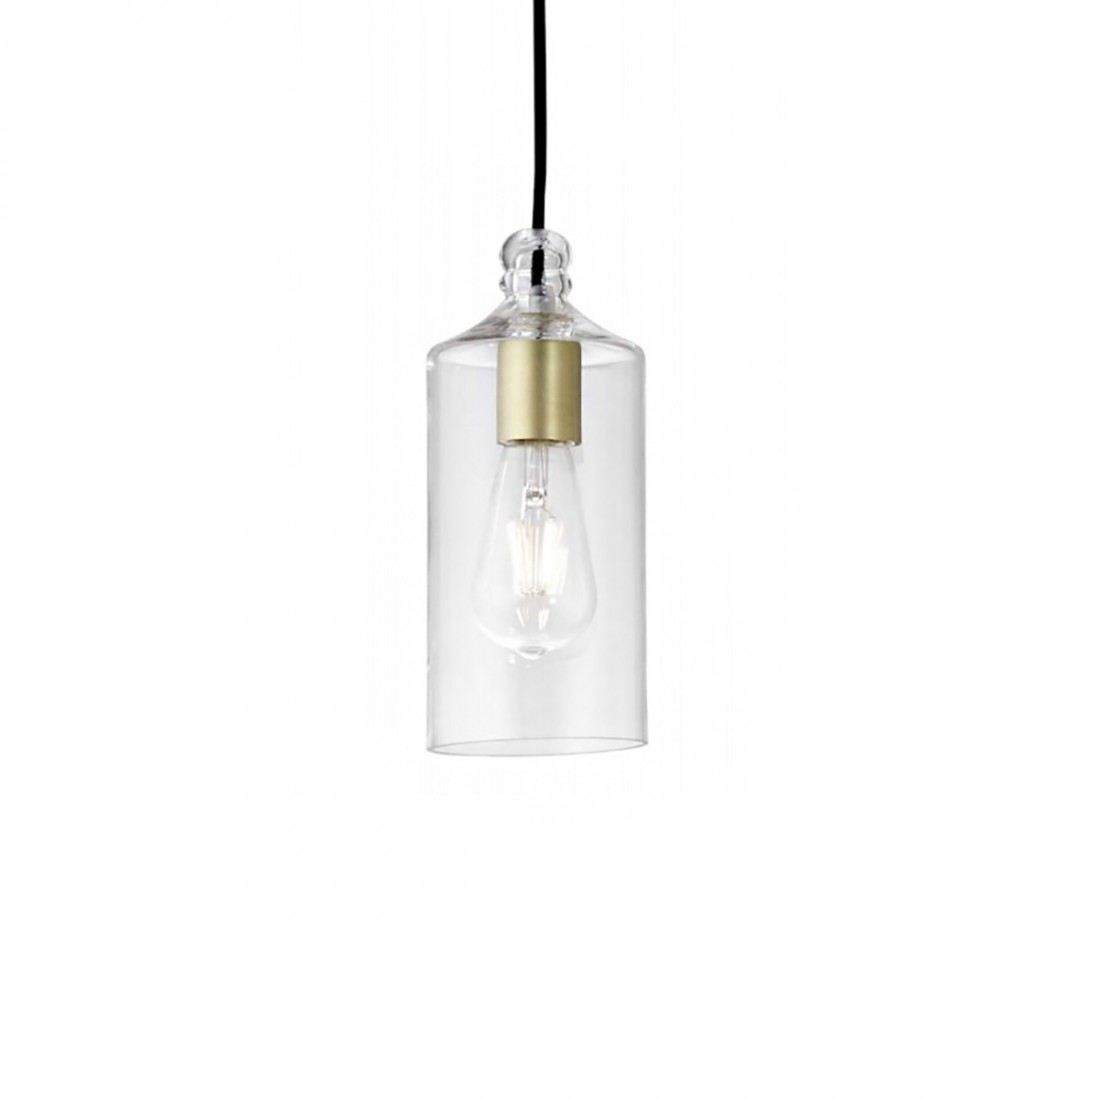 Lámpara de araña clásica Miloox EBE 1744.12 E27 LED